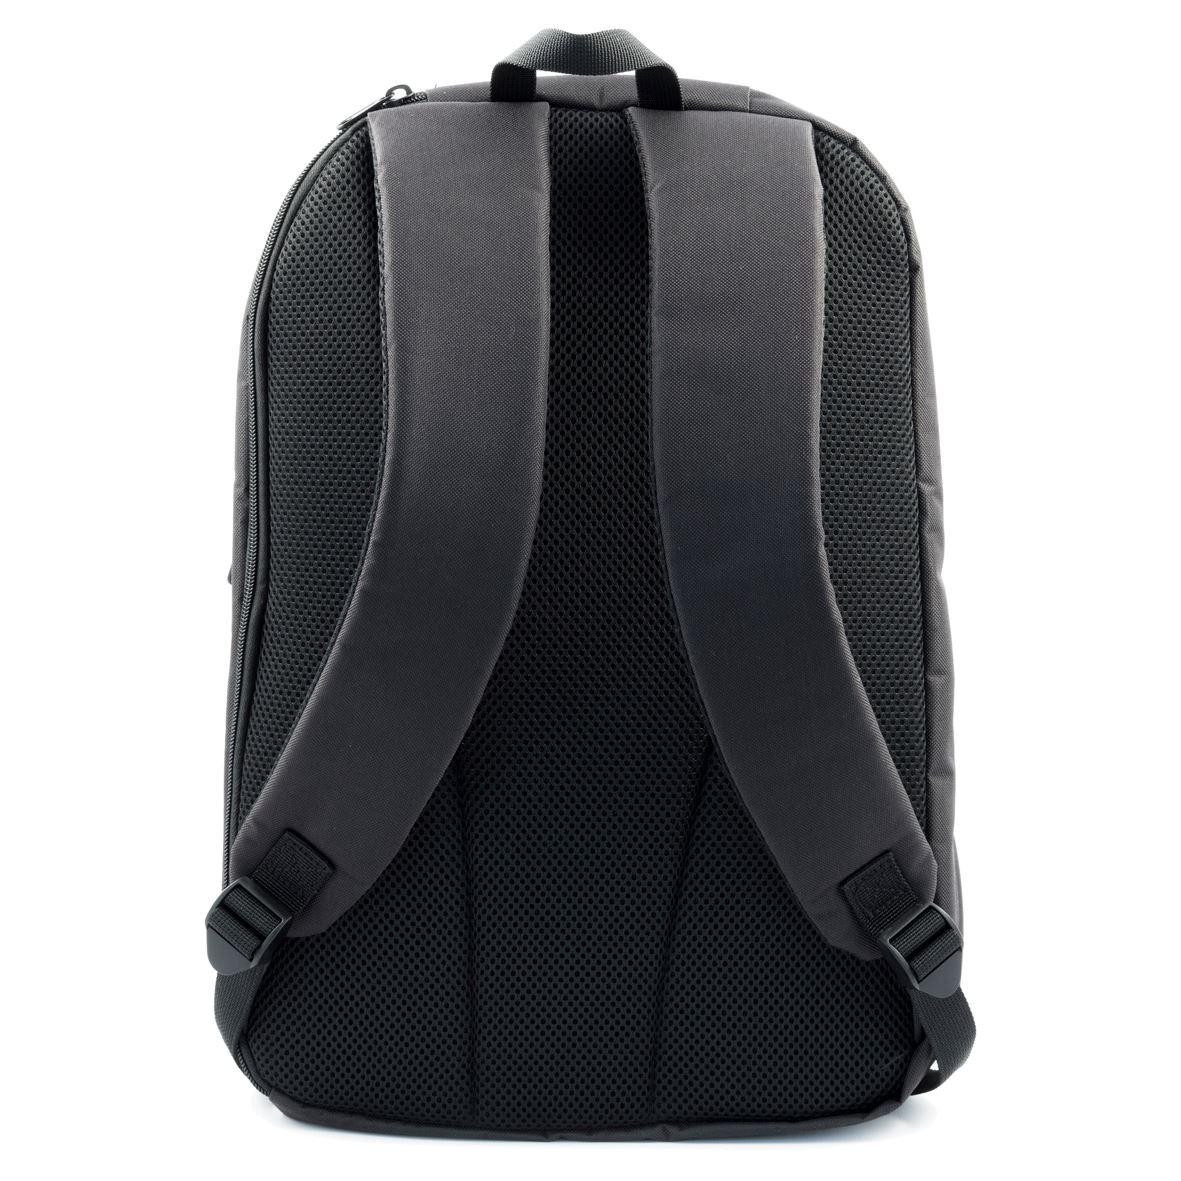 Targus TBB565GL-74 15.6" Intellect Laptop Backpack